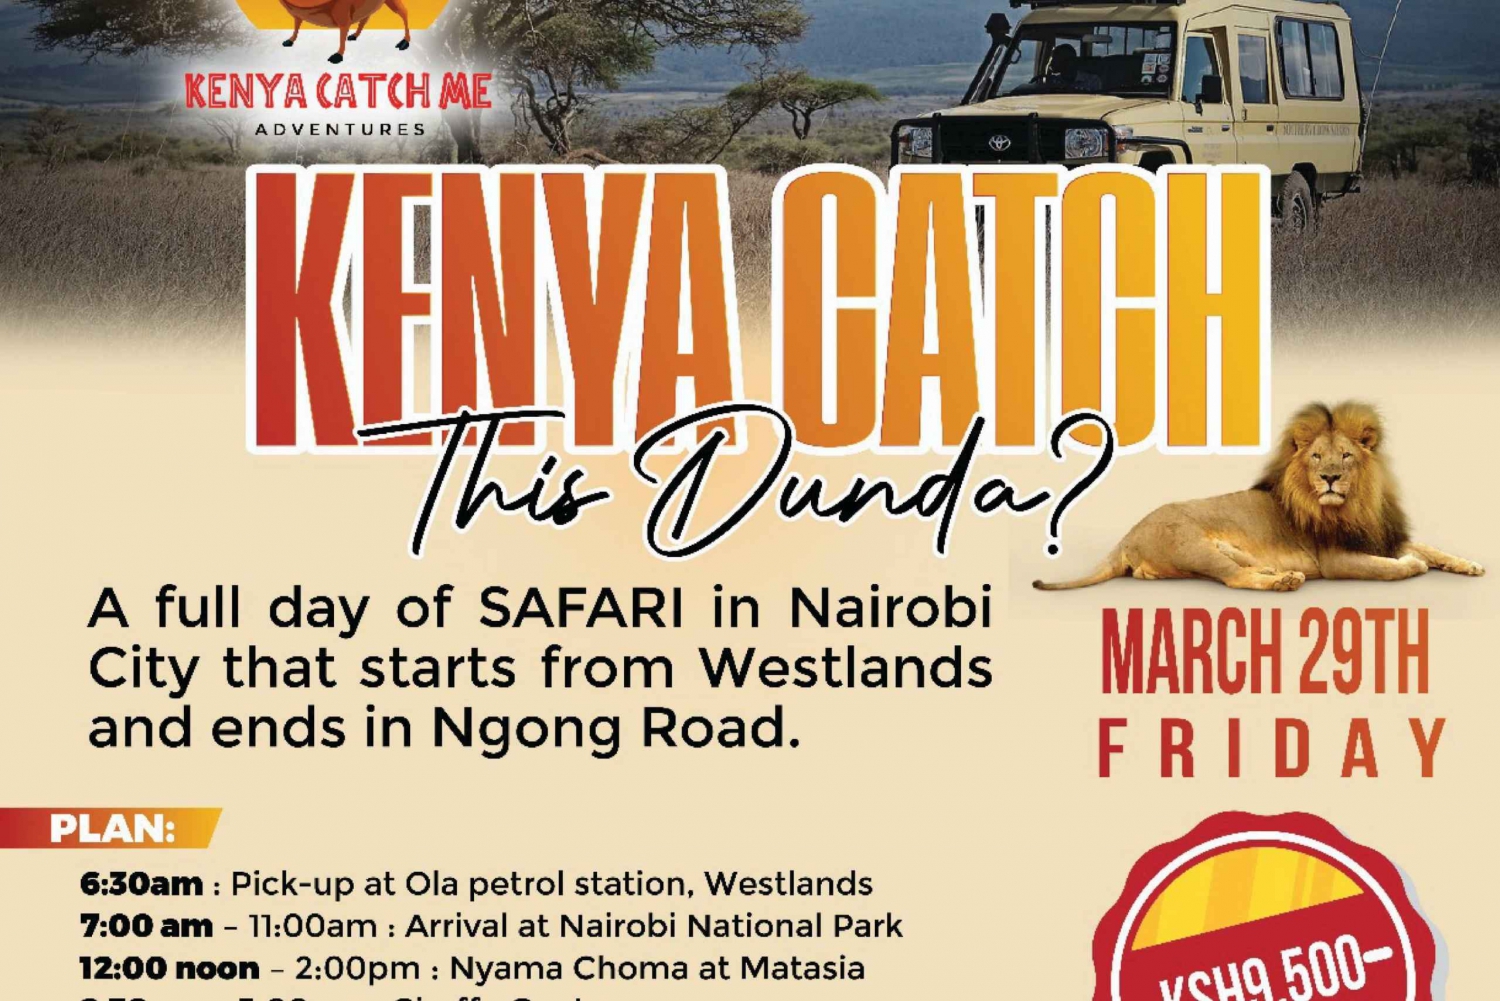 Nairobi: Kenya Catch This Dunda?